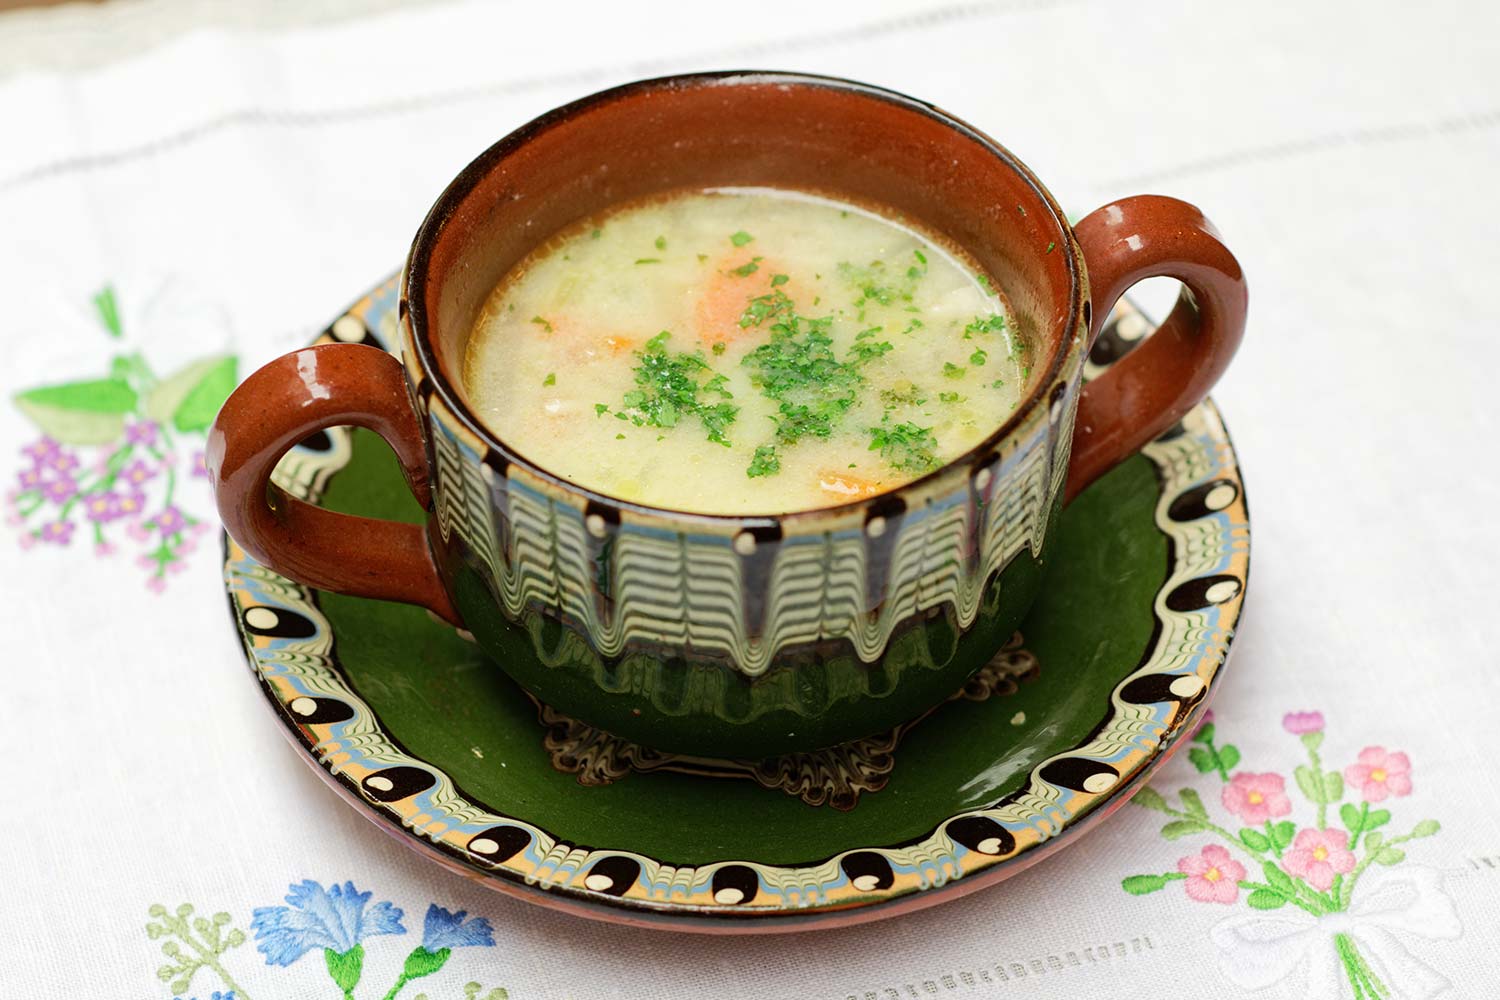 鶏肉、野菜、ヨーグルト、パスタでつくる栄養満点のスープ。レモンとにんにくのソースをかけるとキリッとした味わいに。ブルガリアでは二日酔いの日に食べる定番の料理。